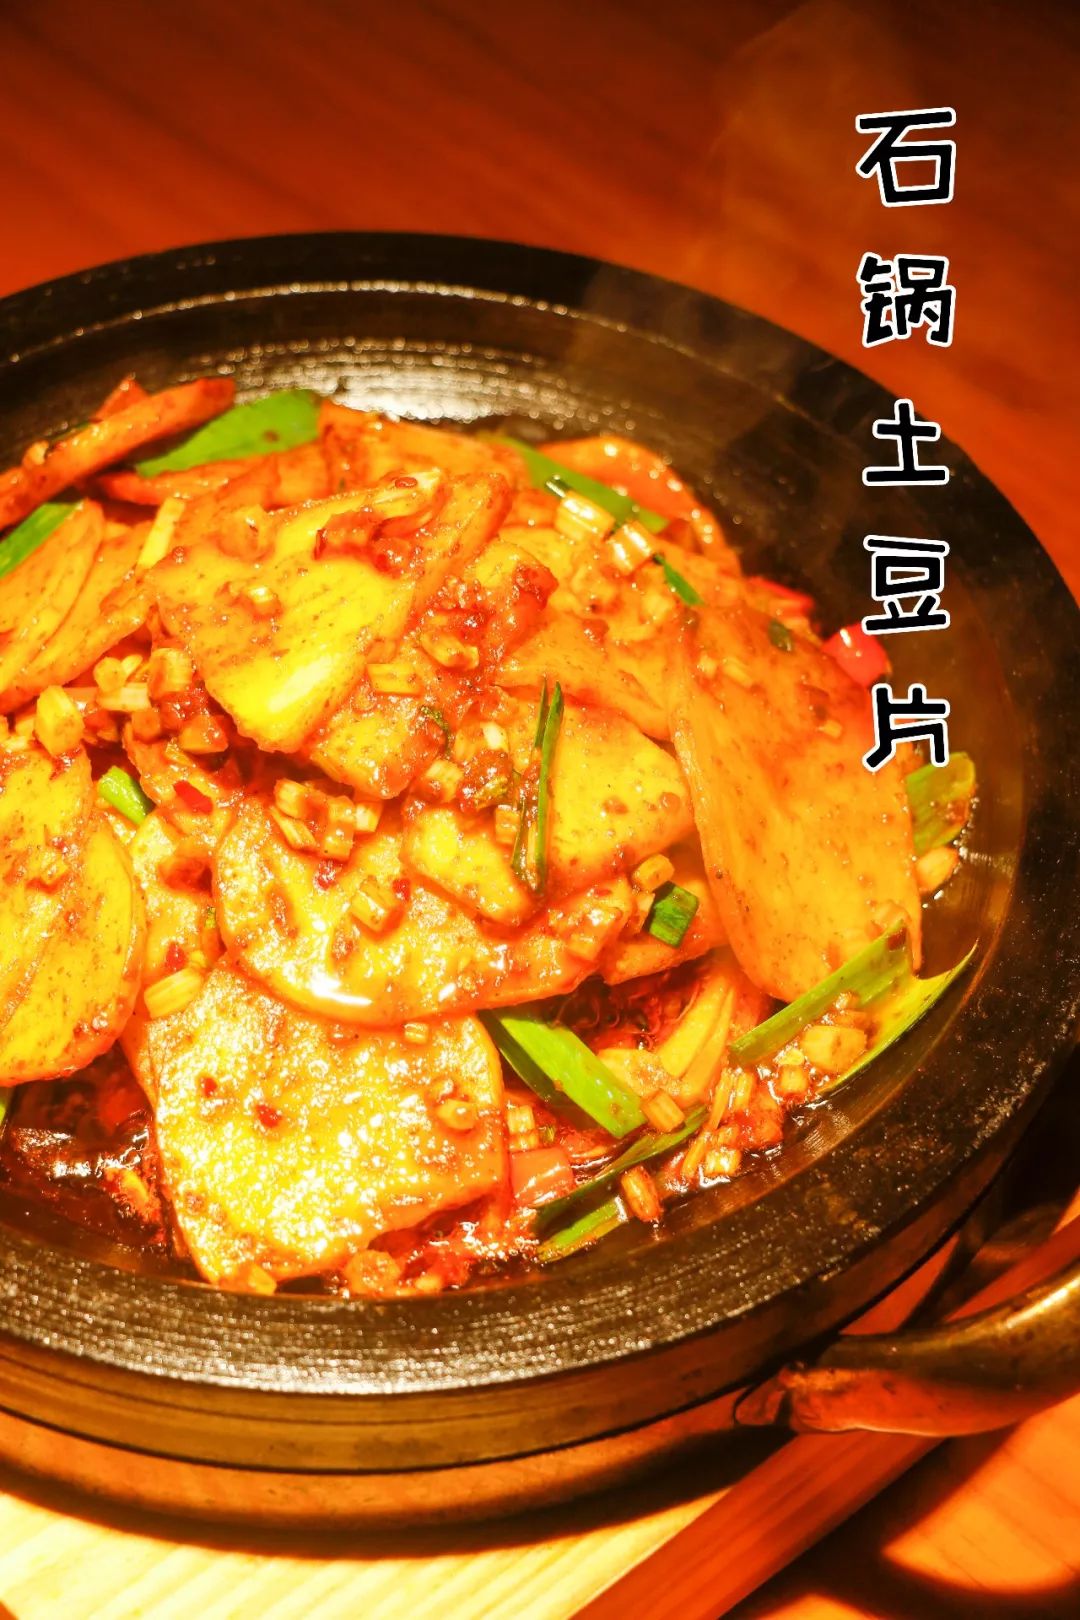 除了吃鱼,九锅一堂的其他菜品也非常不错,首推的就是这道石锅土豆片